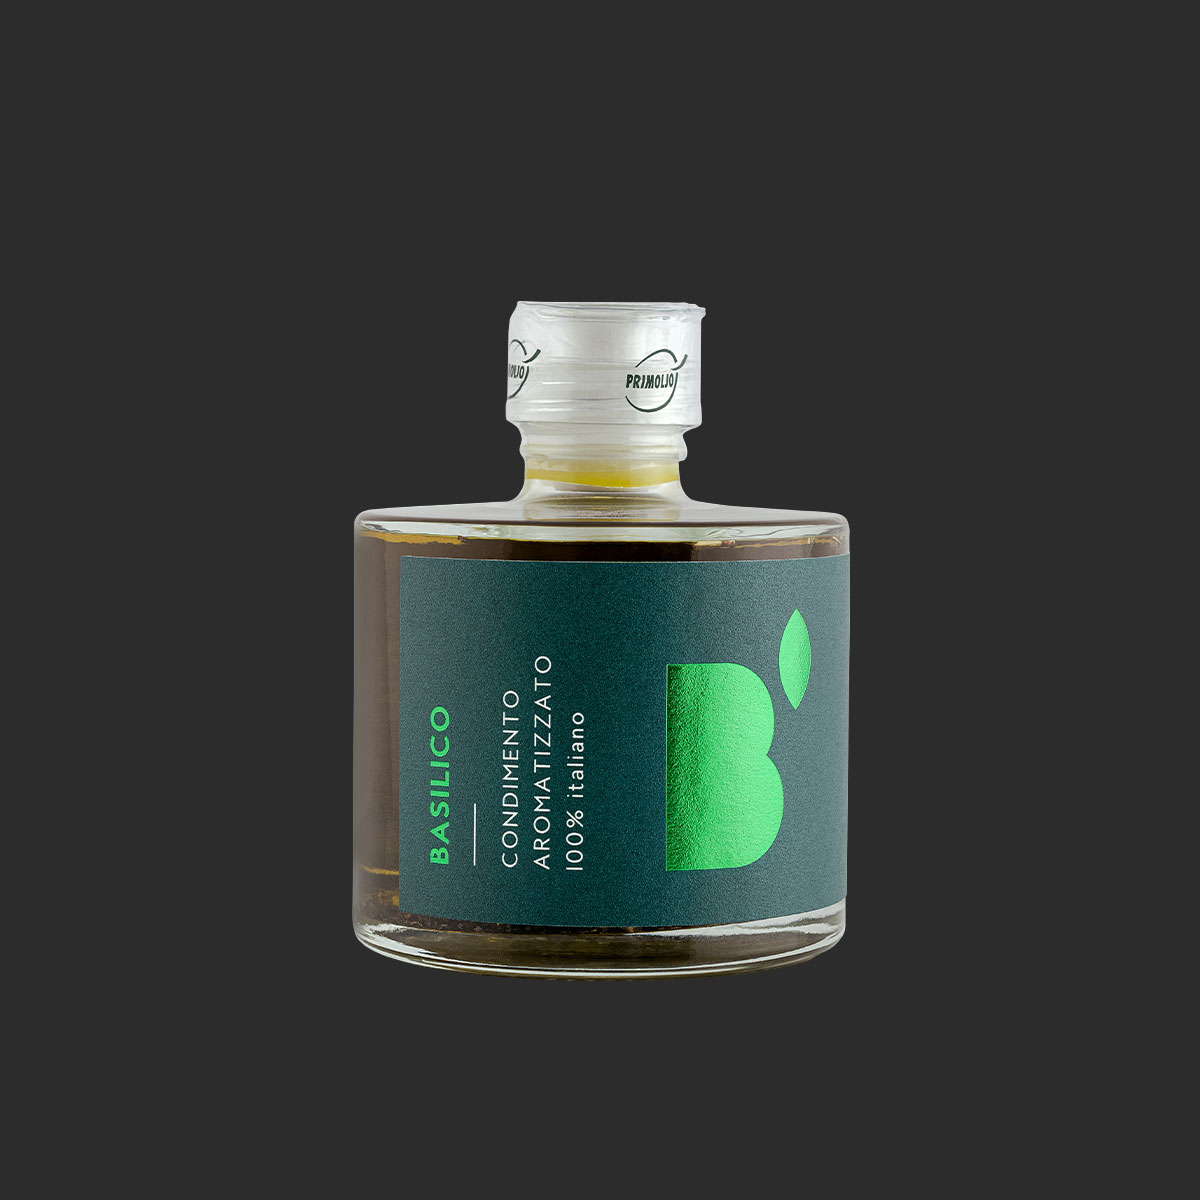 Primoljo condimento a base di olio di oliva aromatizzato al basolico